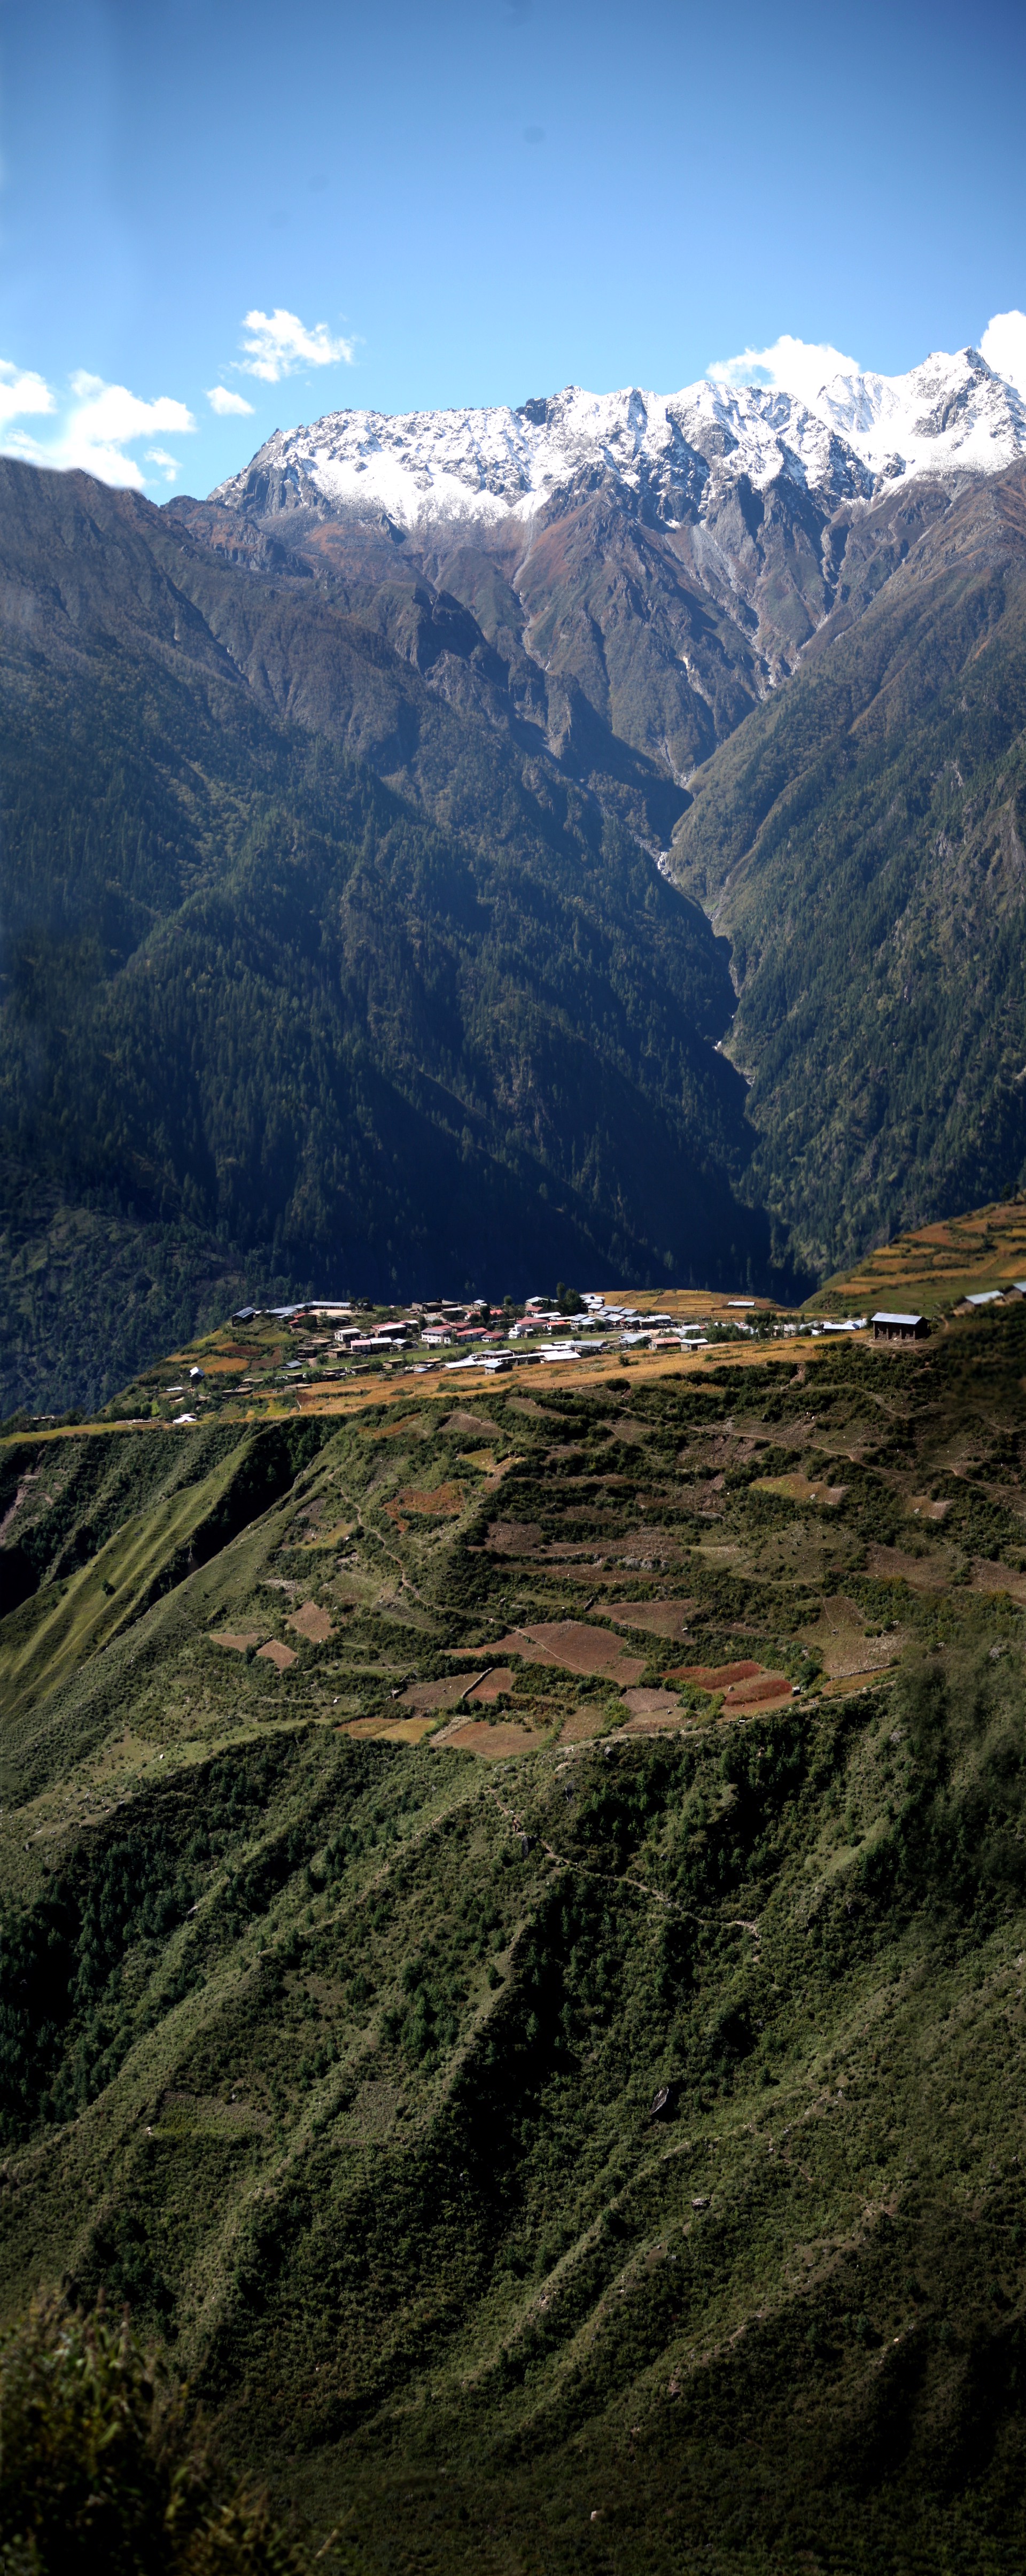 Gateway to Humla, Nepal by Cora Edmonds